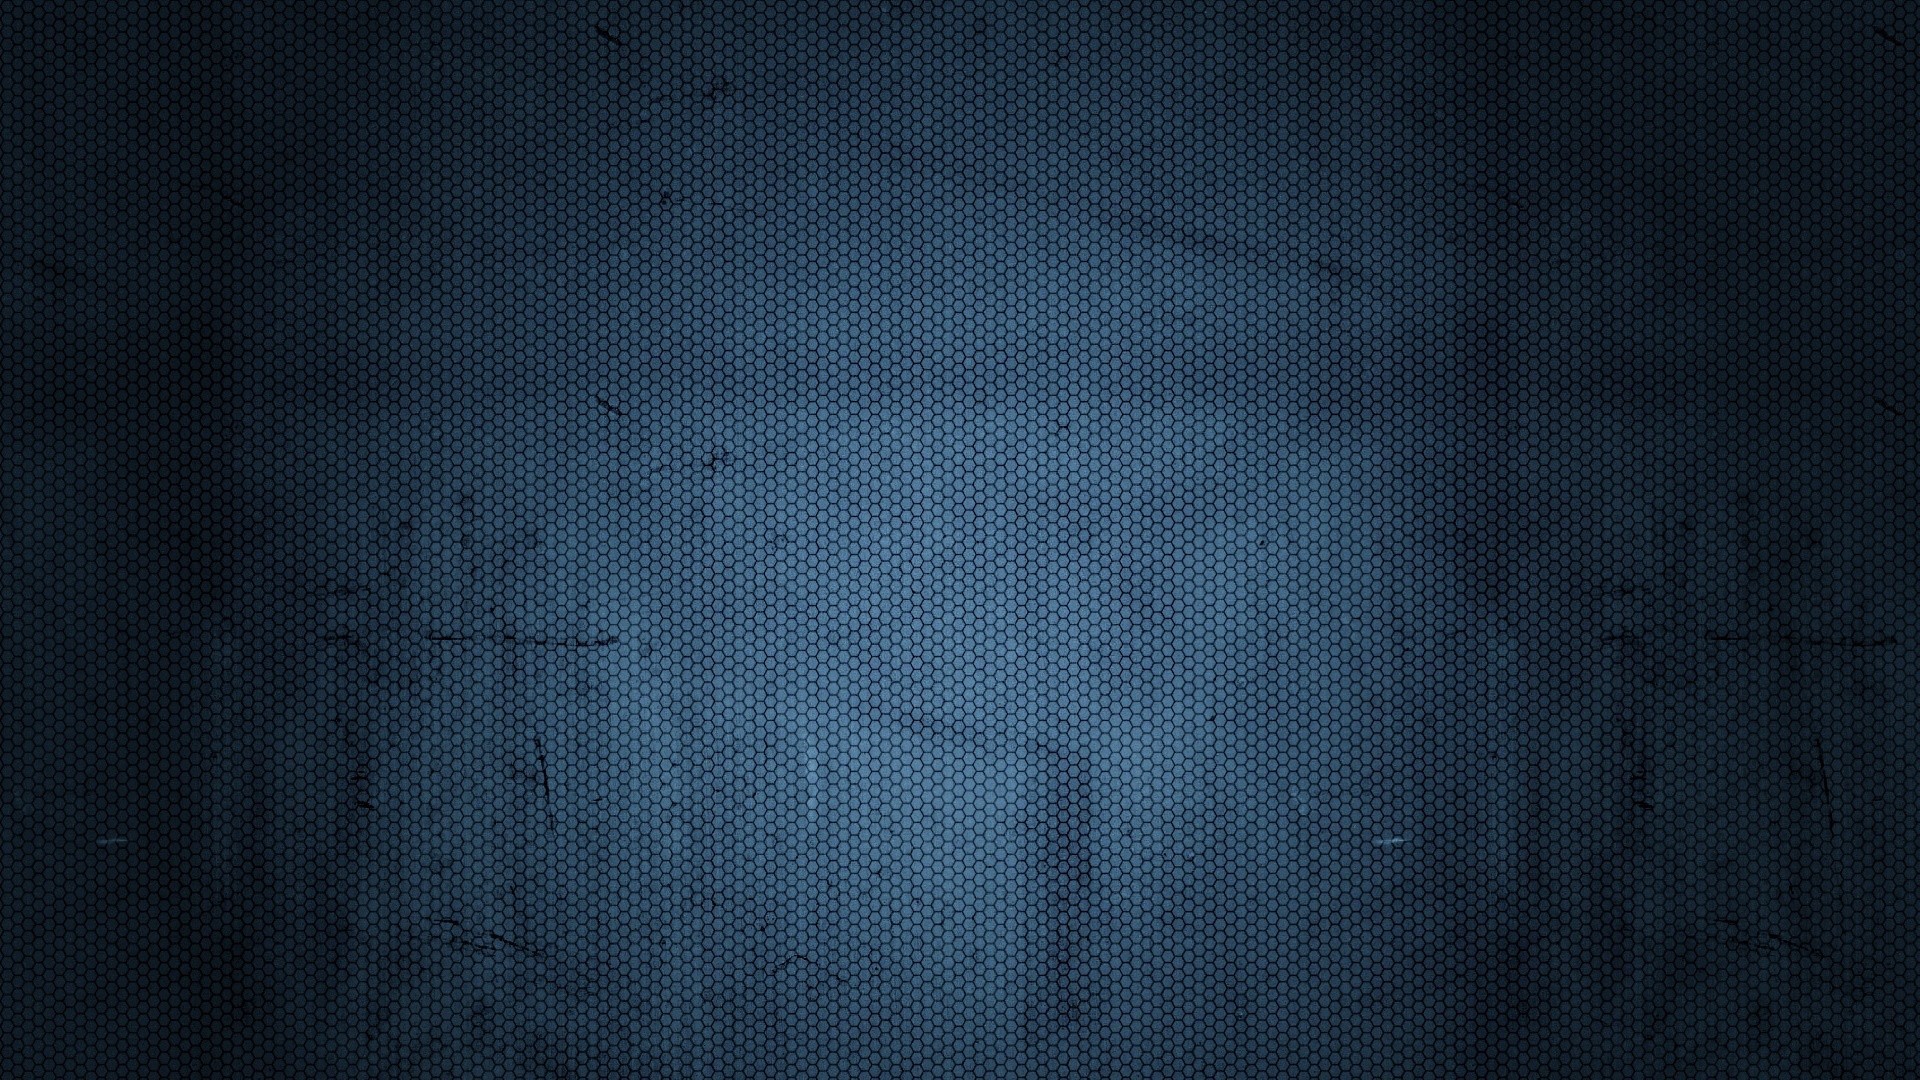  Navy  Blue  HD Wallpapers  PixelsTalk Net